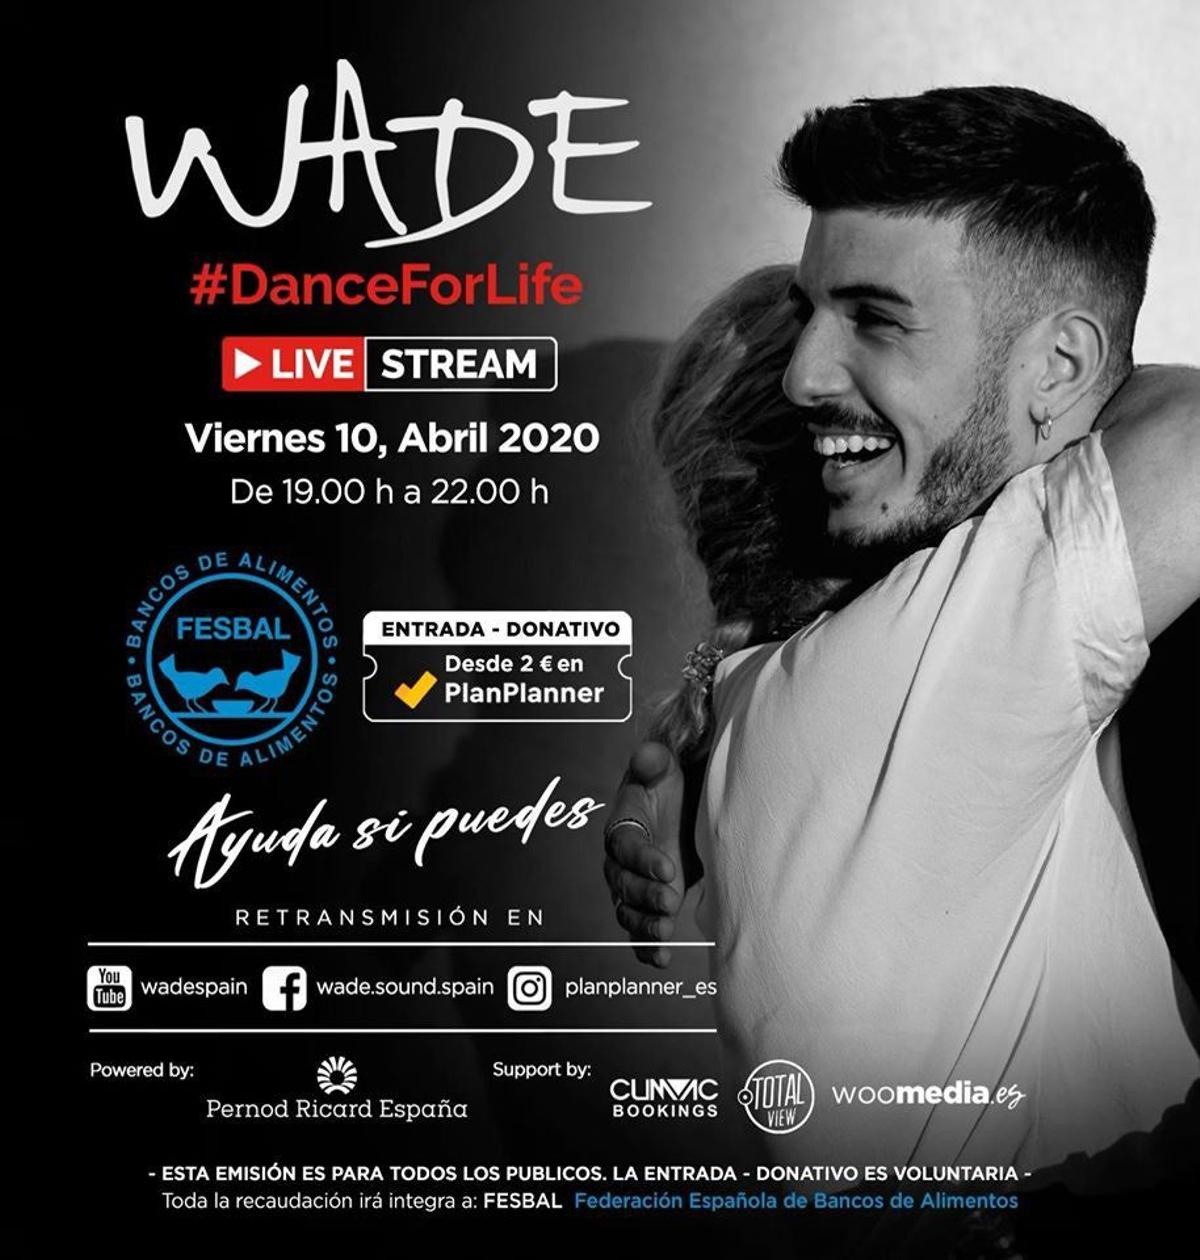 #DanceForLife, un concierto benéfico con el DJ sevillano Wade